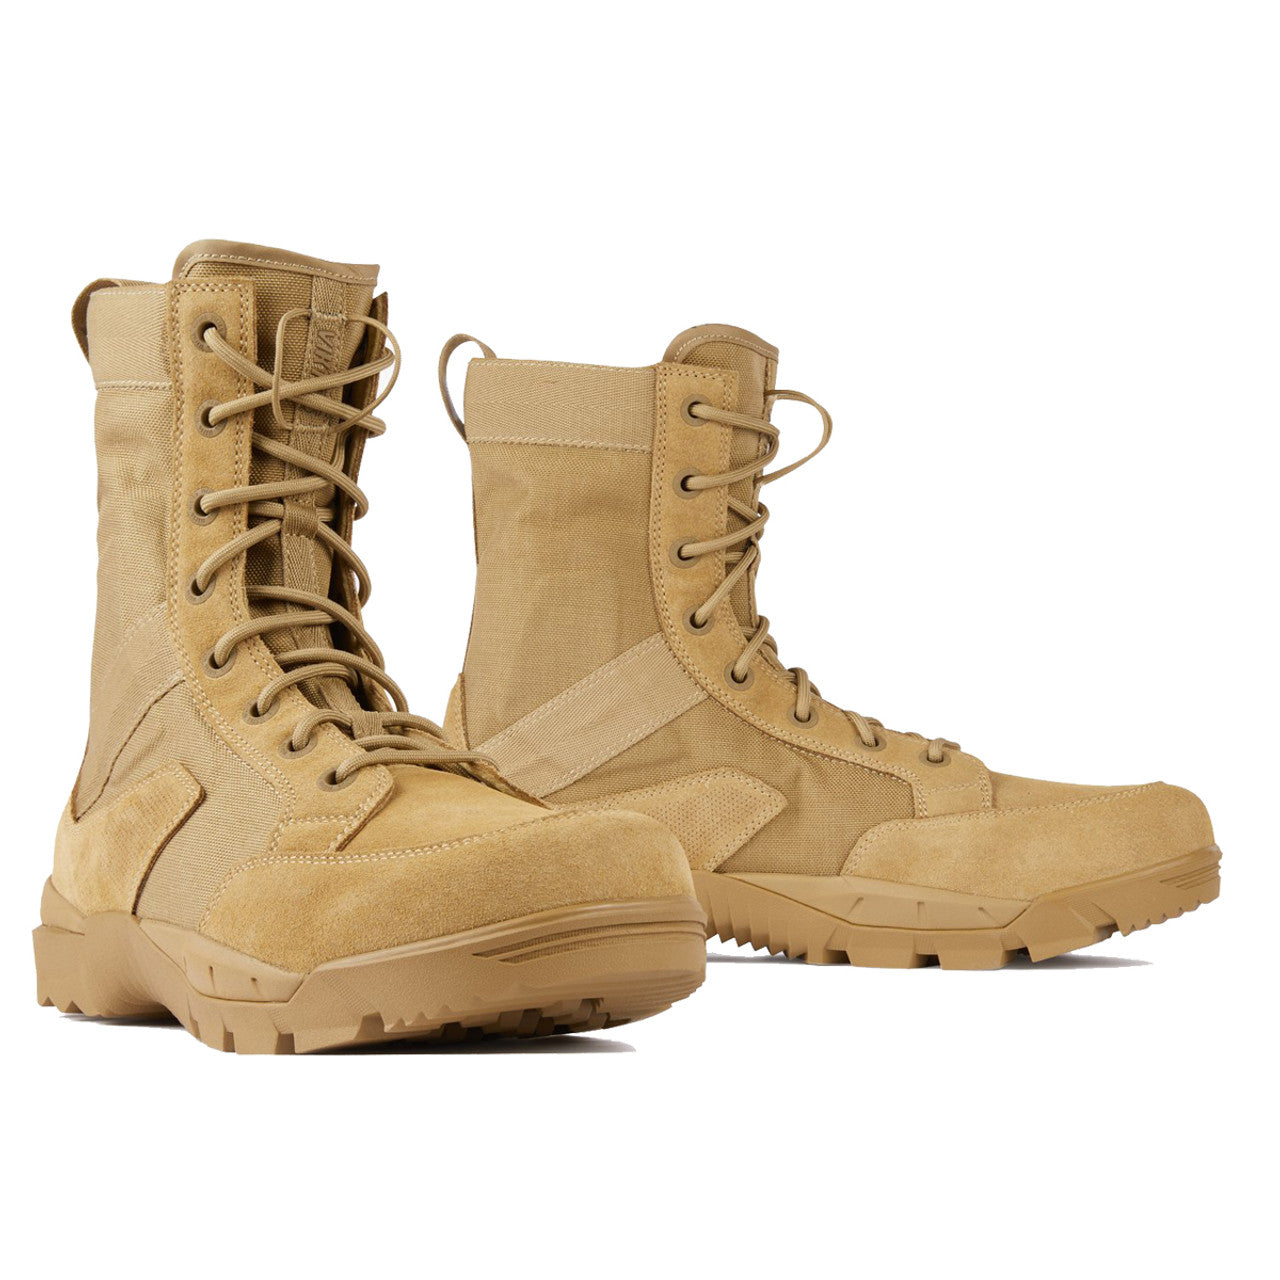 Viktos Johnny Combat SF Boots Coyote Footwear VIKTOS Tactical Gear Supplier Tactical Distributors Australia